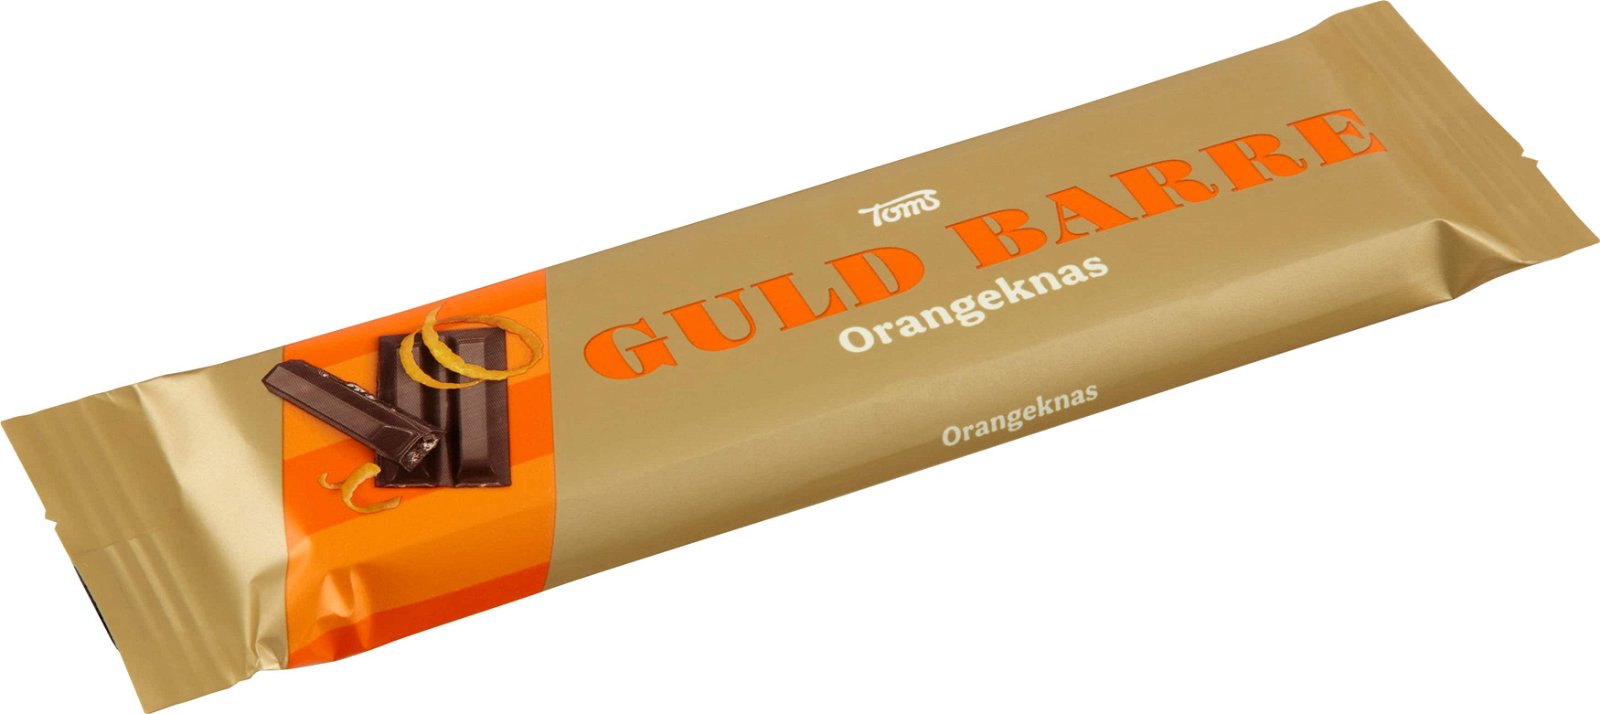 Guld Barre Orangeknas, 45g